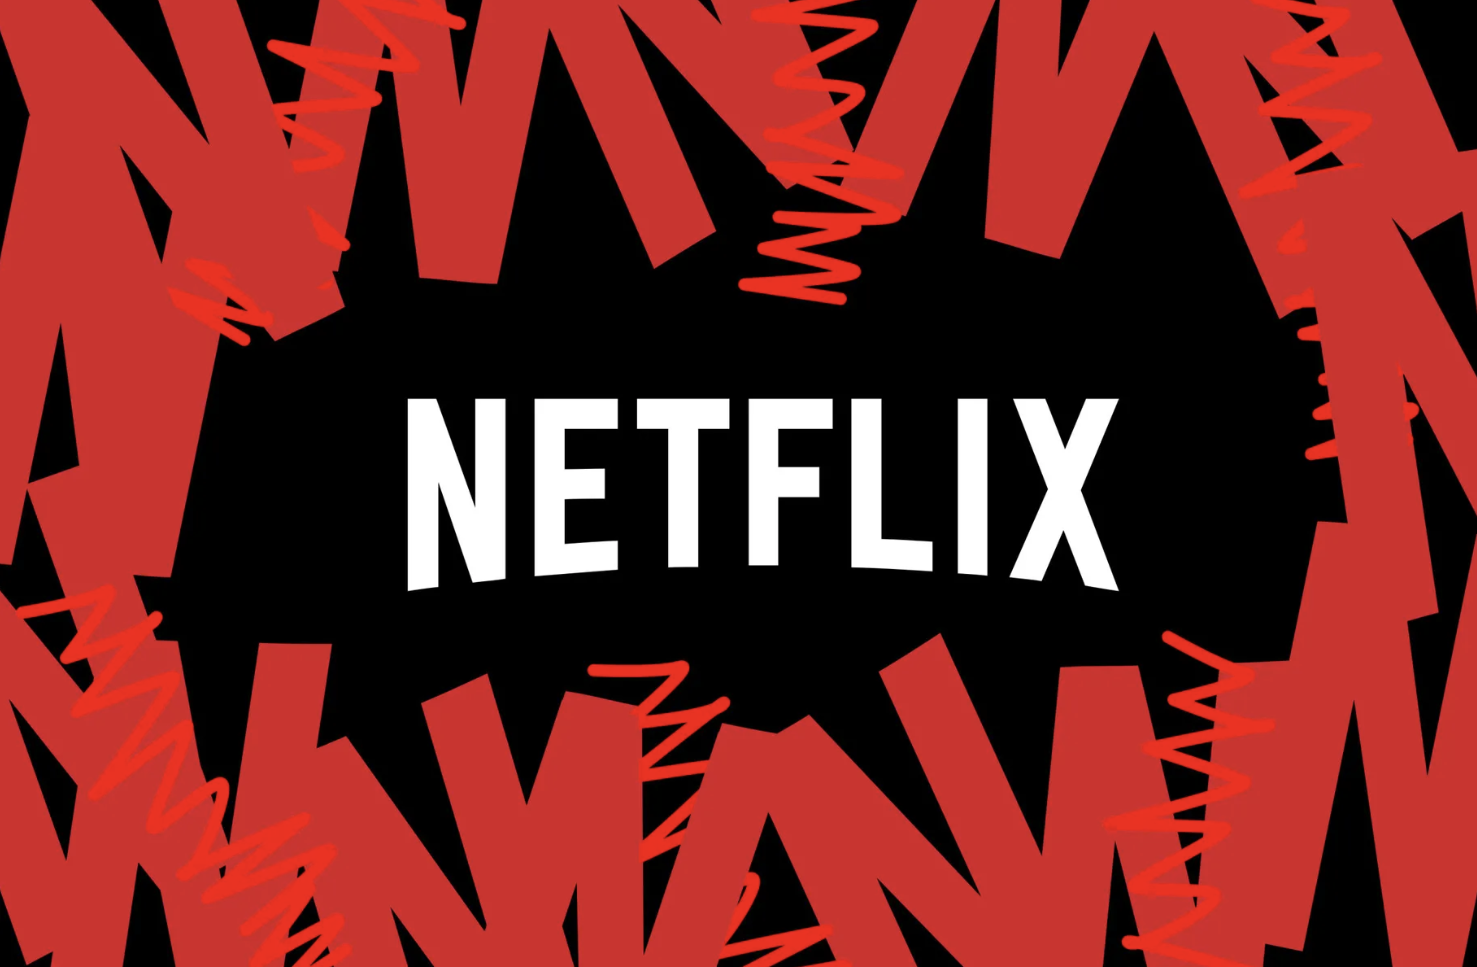 Giám đốc kinh doanh của Snap sẽ chuyển đổi sang chạy quảng cáo tại Netflix. Ảnh chụp màn hình